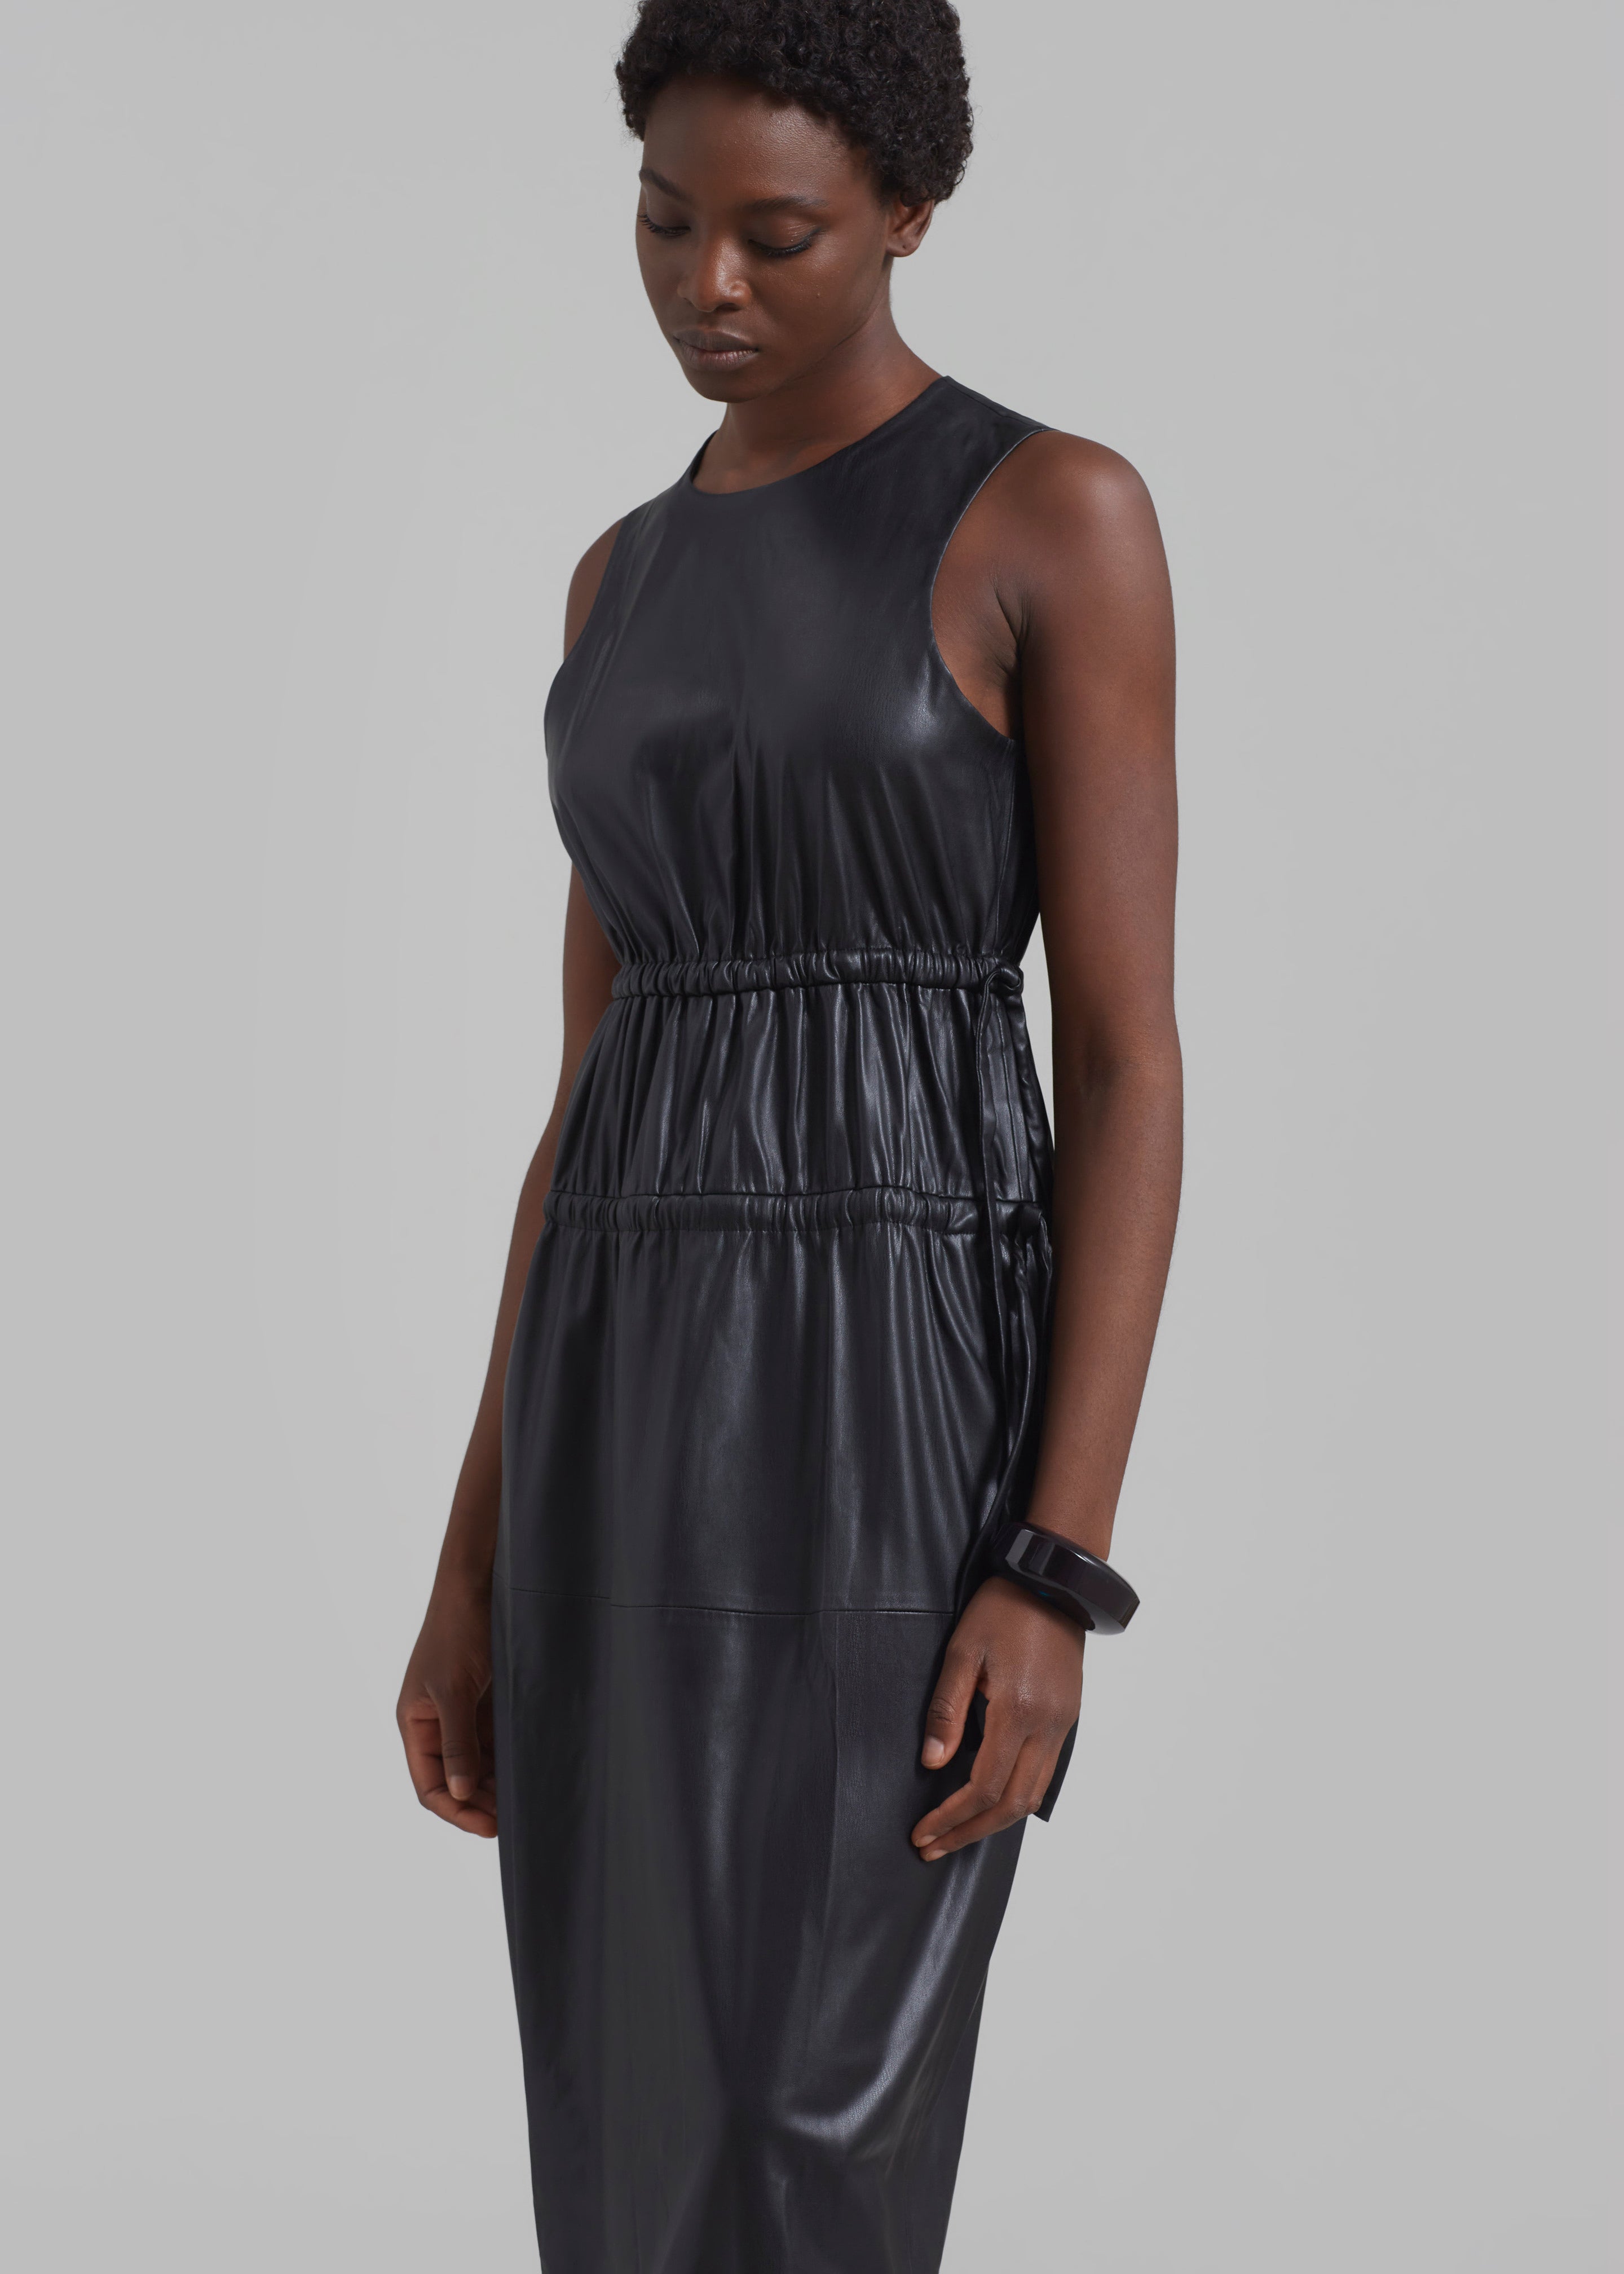 Proenza Schouler White Label Faux Leather Drawstring Dress - Black